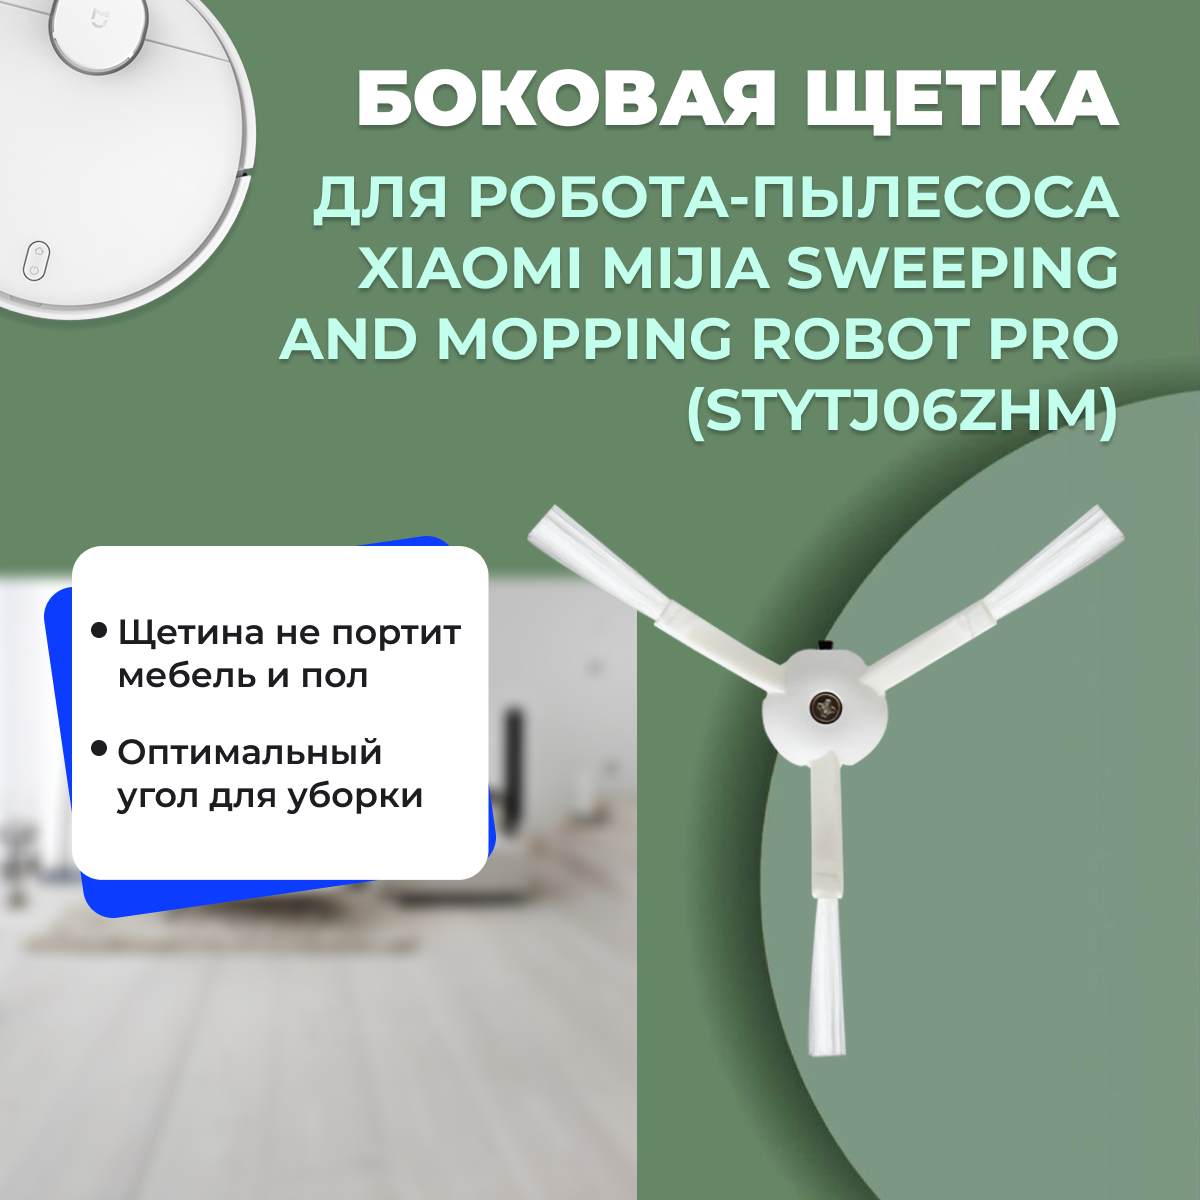 Боковая щетка для робота-пылесоса Xiaomi Mijia Sweeping and Mopping Robot Pro (STYTJ06ZHM) 558164